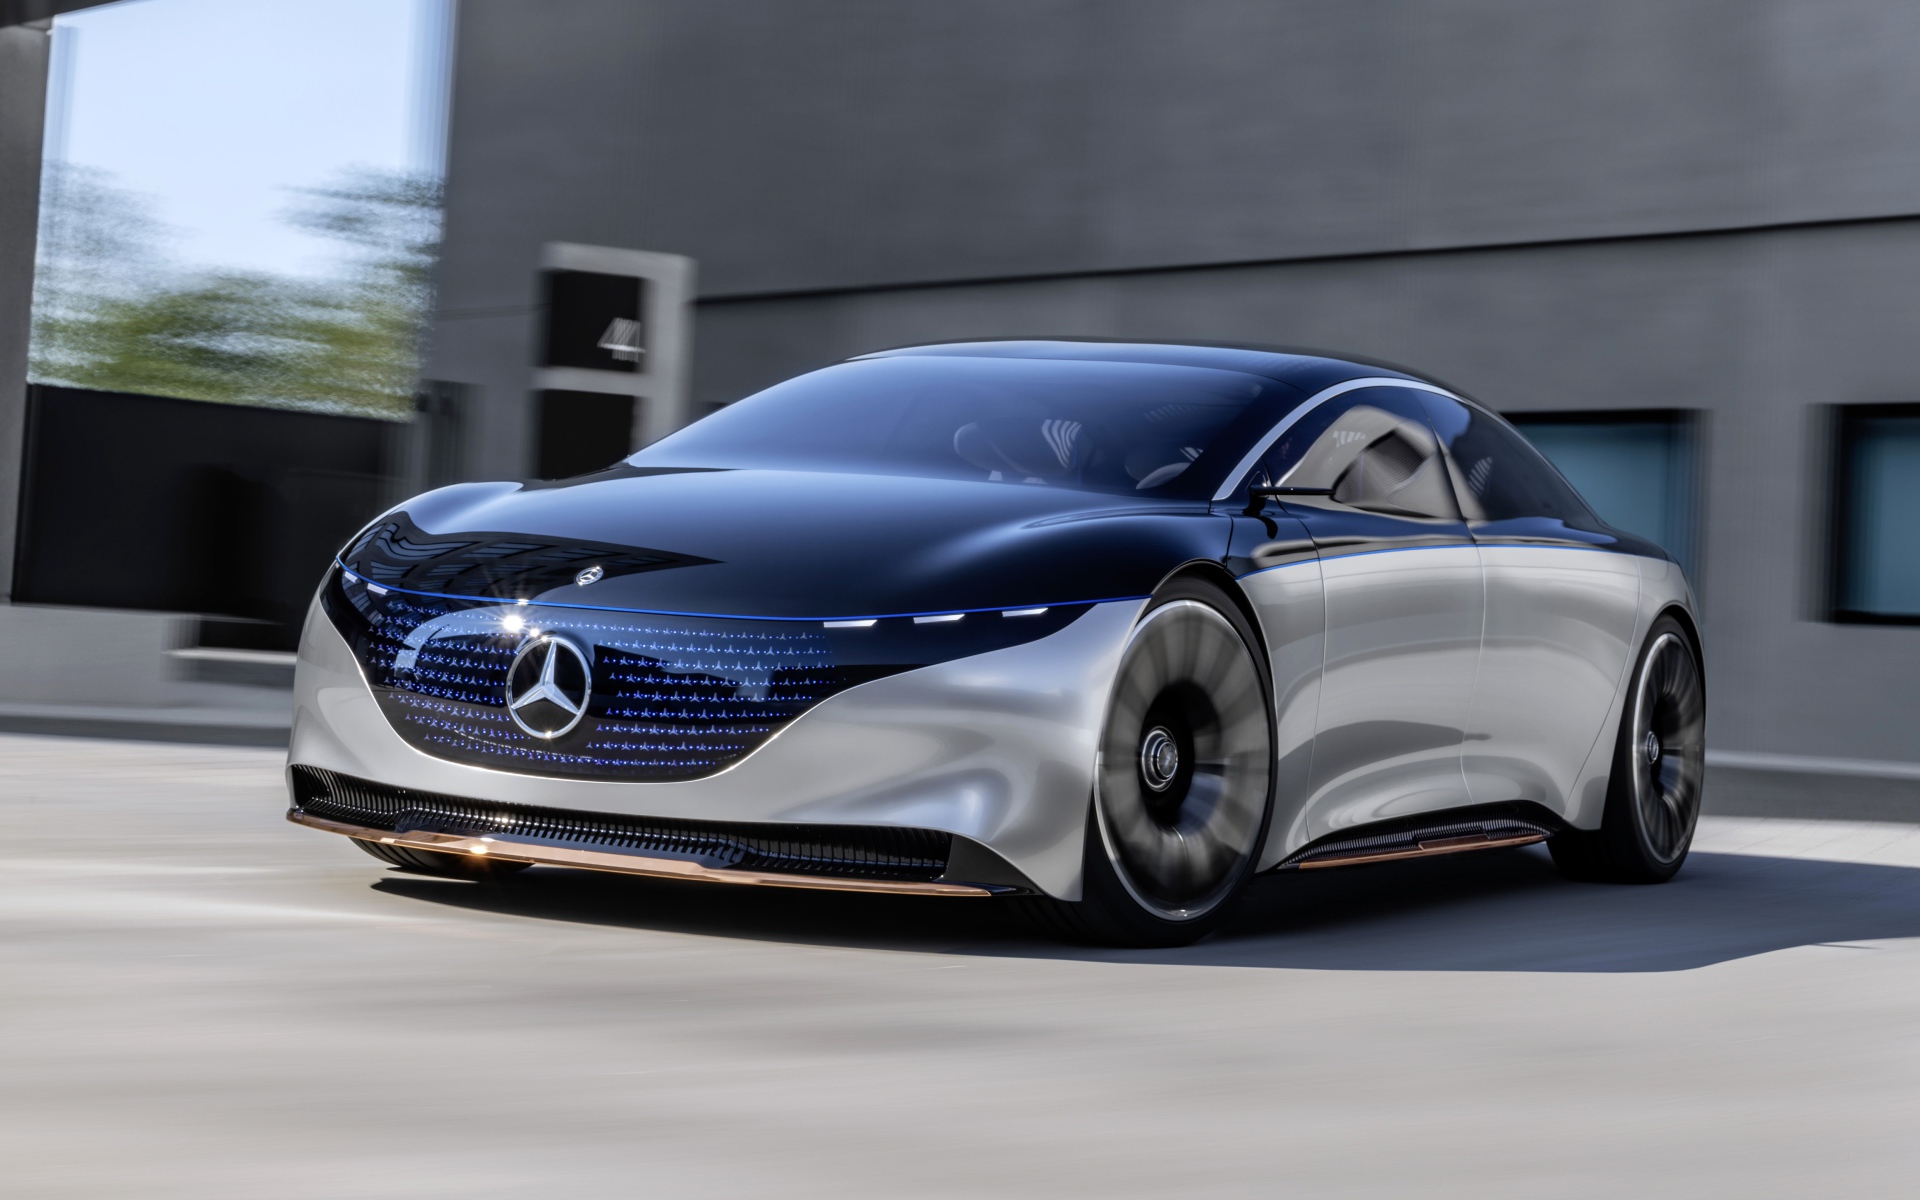 Автомобиль Mercedes-Benz Vision EQS 2019 года у серого здания